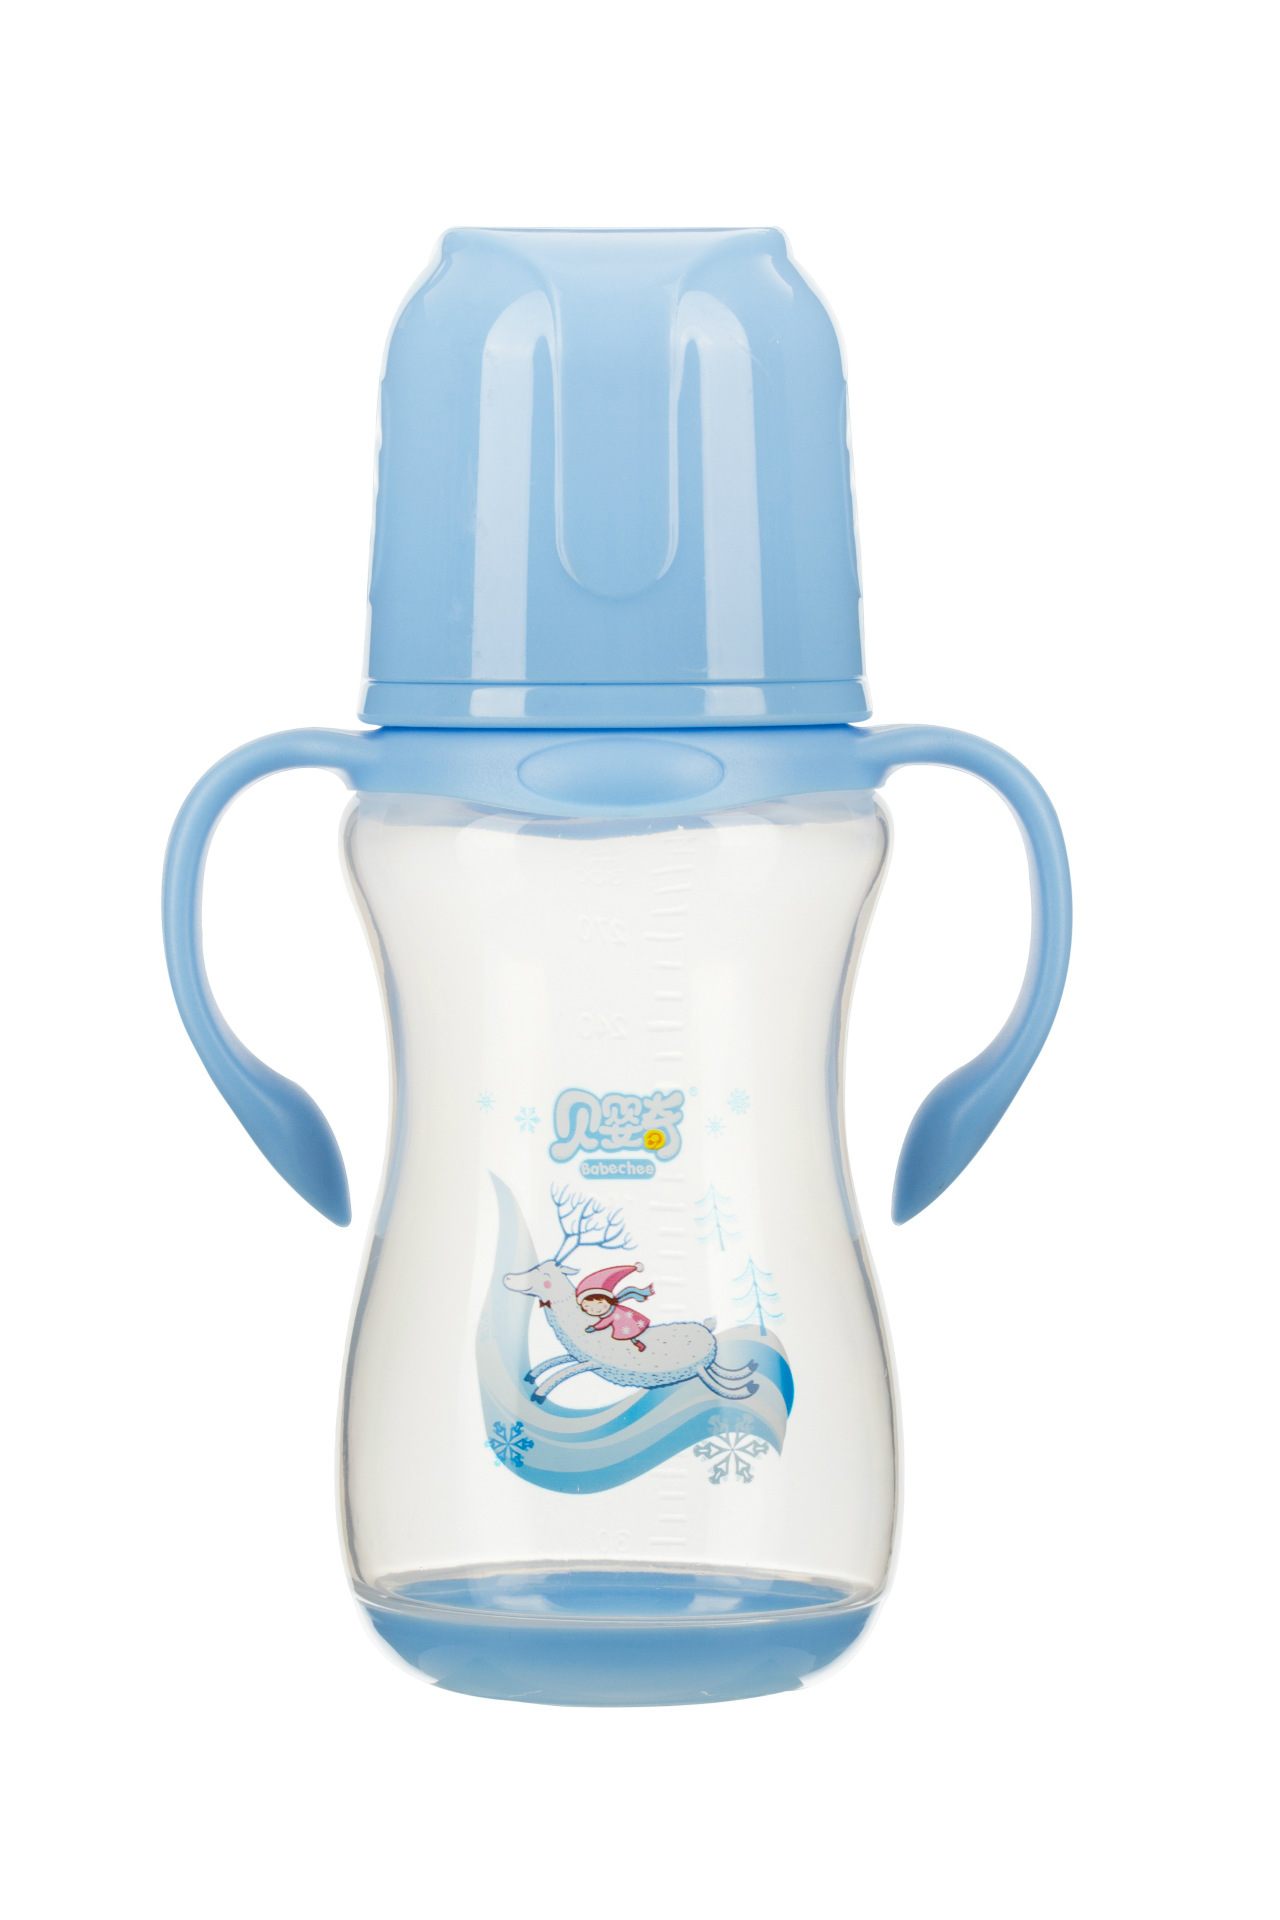 喜多宽口径葫芦PES奶瓶S140ML 新品H10800 喜多塑料奶瓶 50876_幸福一对儿